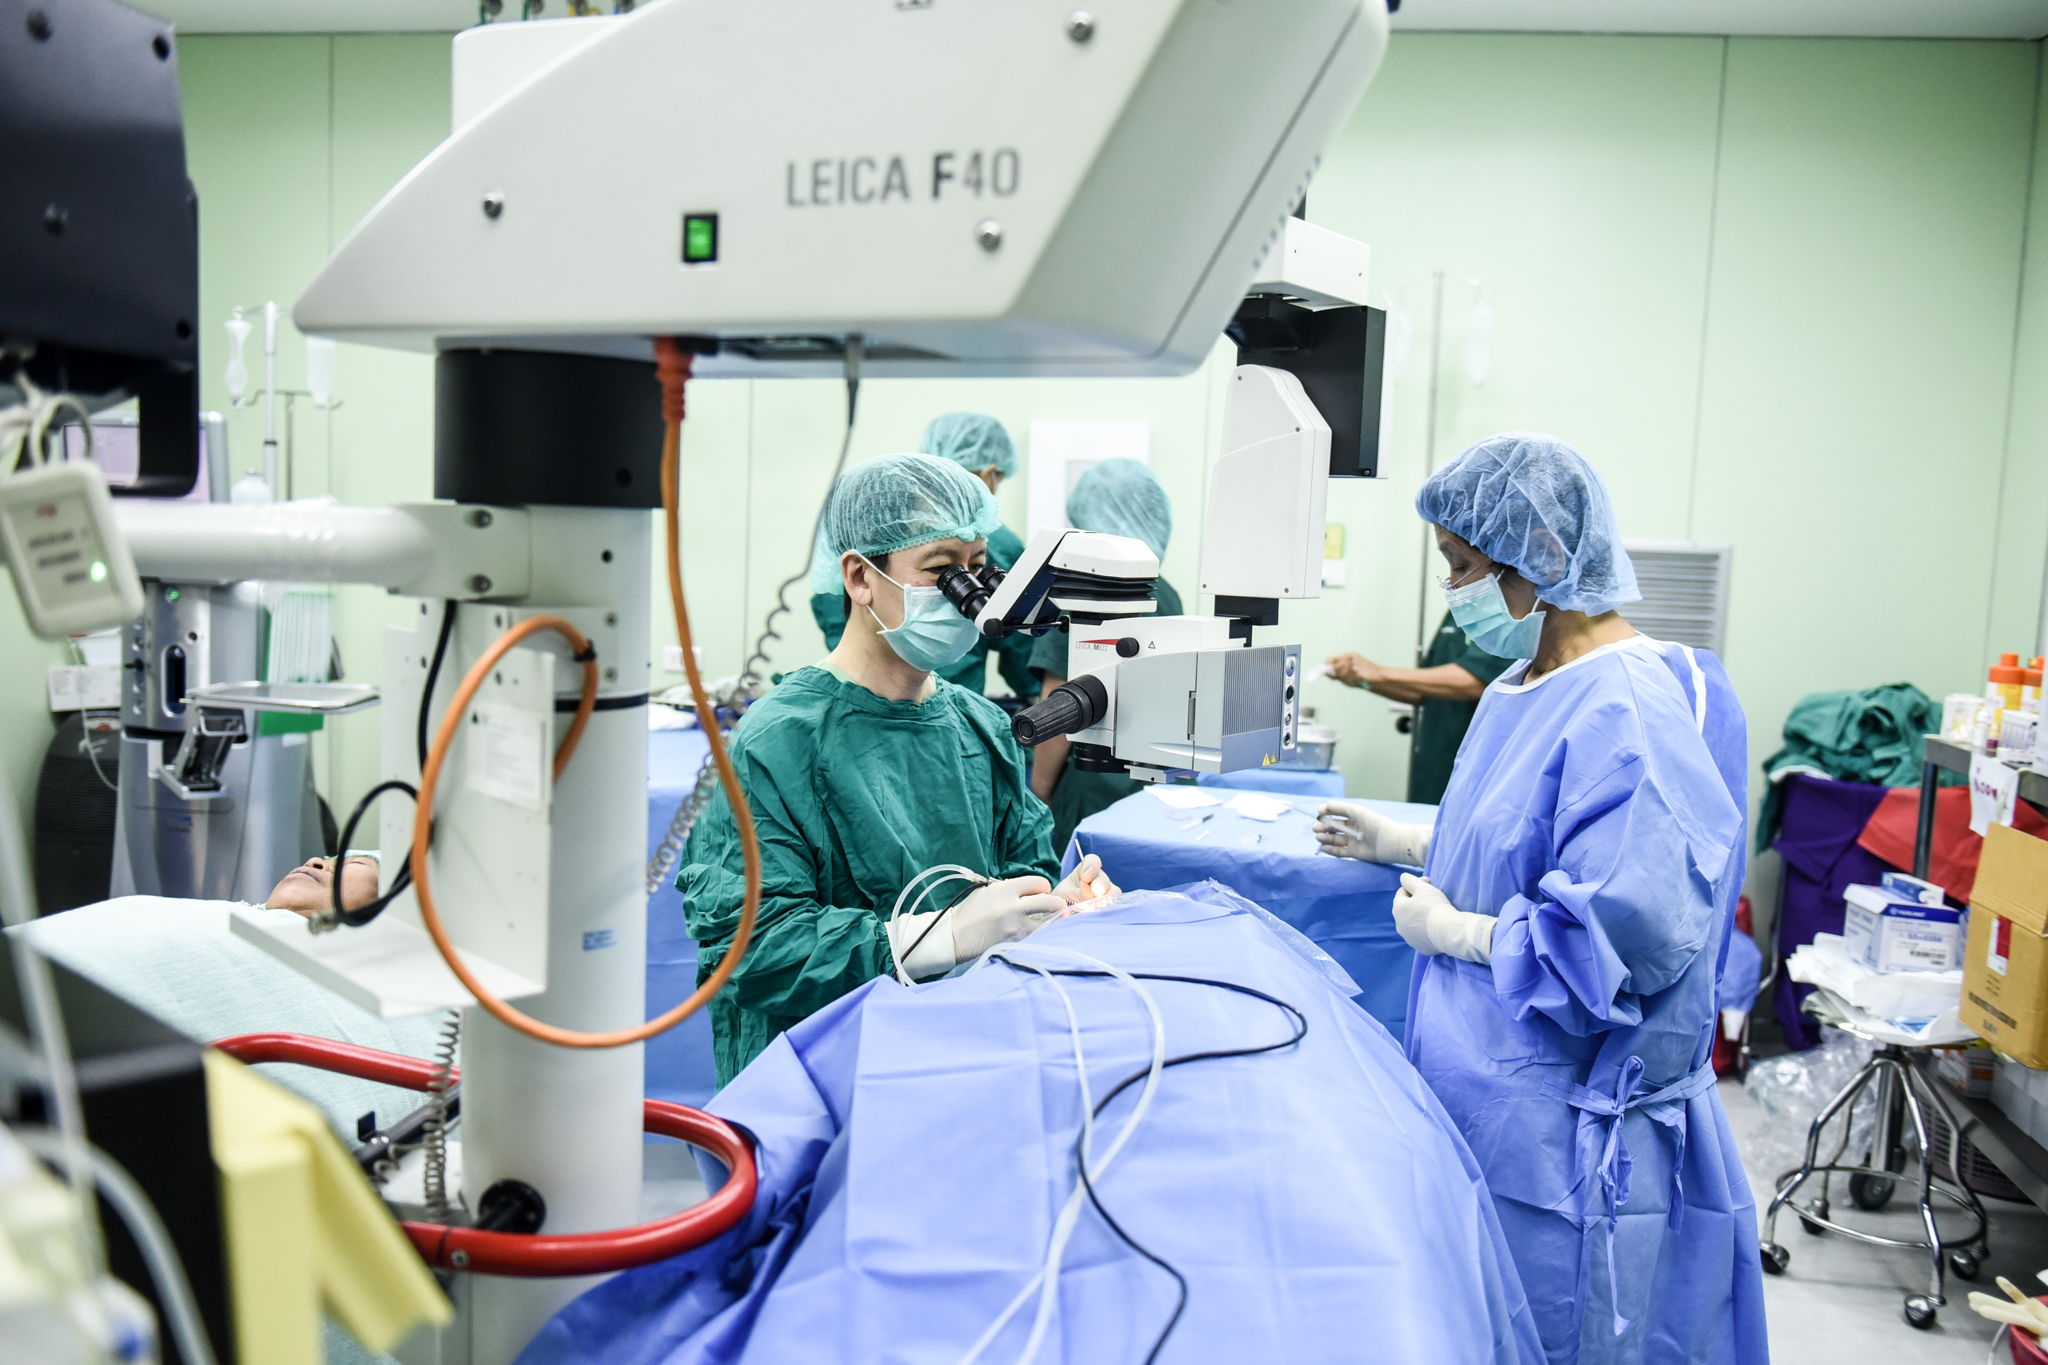 โครงการหน่วยแพทย์ Medical Mission 2019 รวมน้ำใจไทย-อเมริกัน สู่โรงพยาบาล ๕๐ พรรษา มหาวชิราลงกรณ จังหวัดอุบลราชธานี